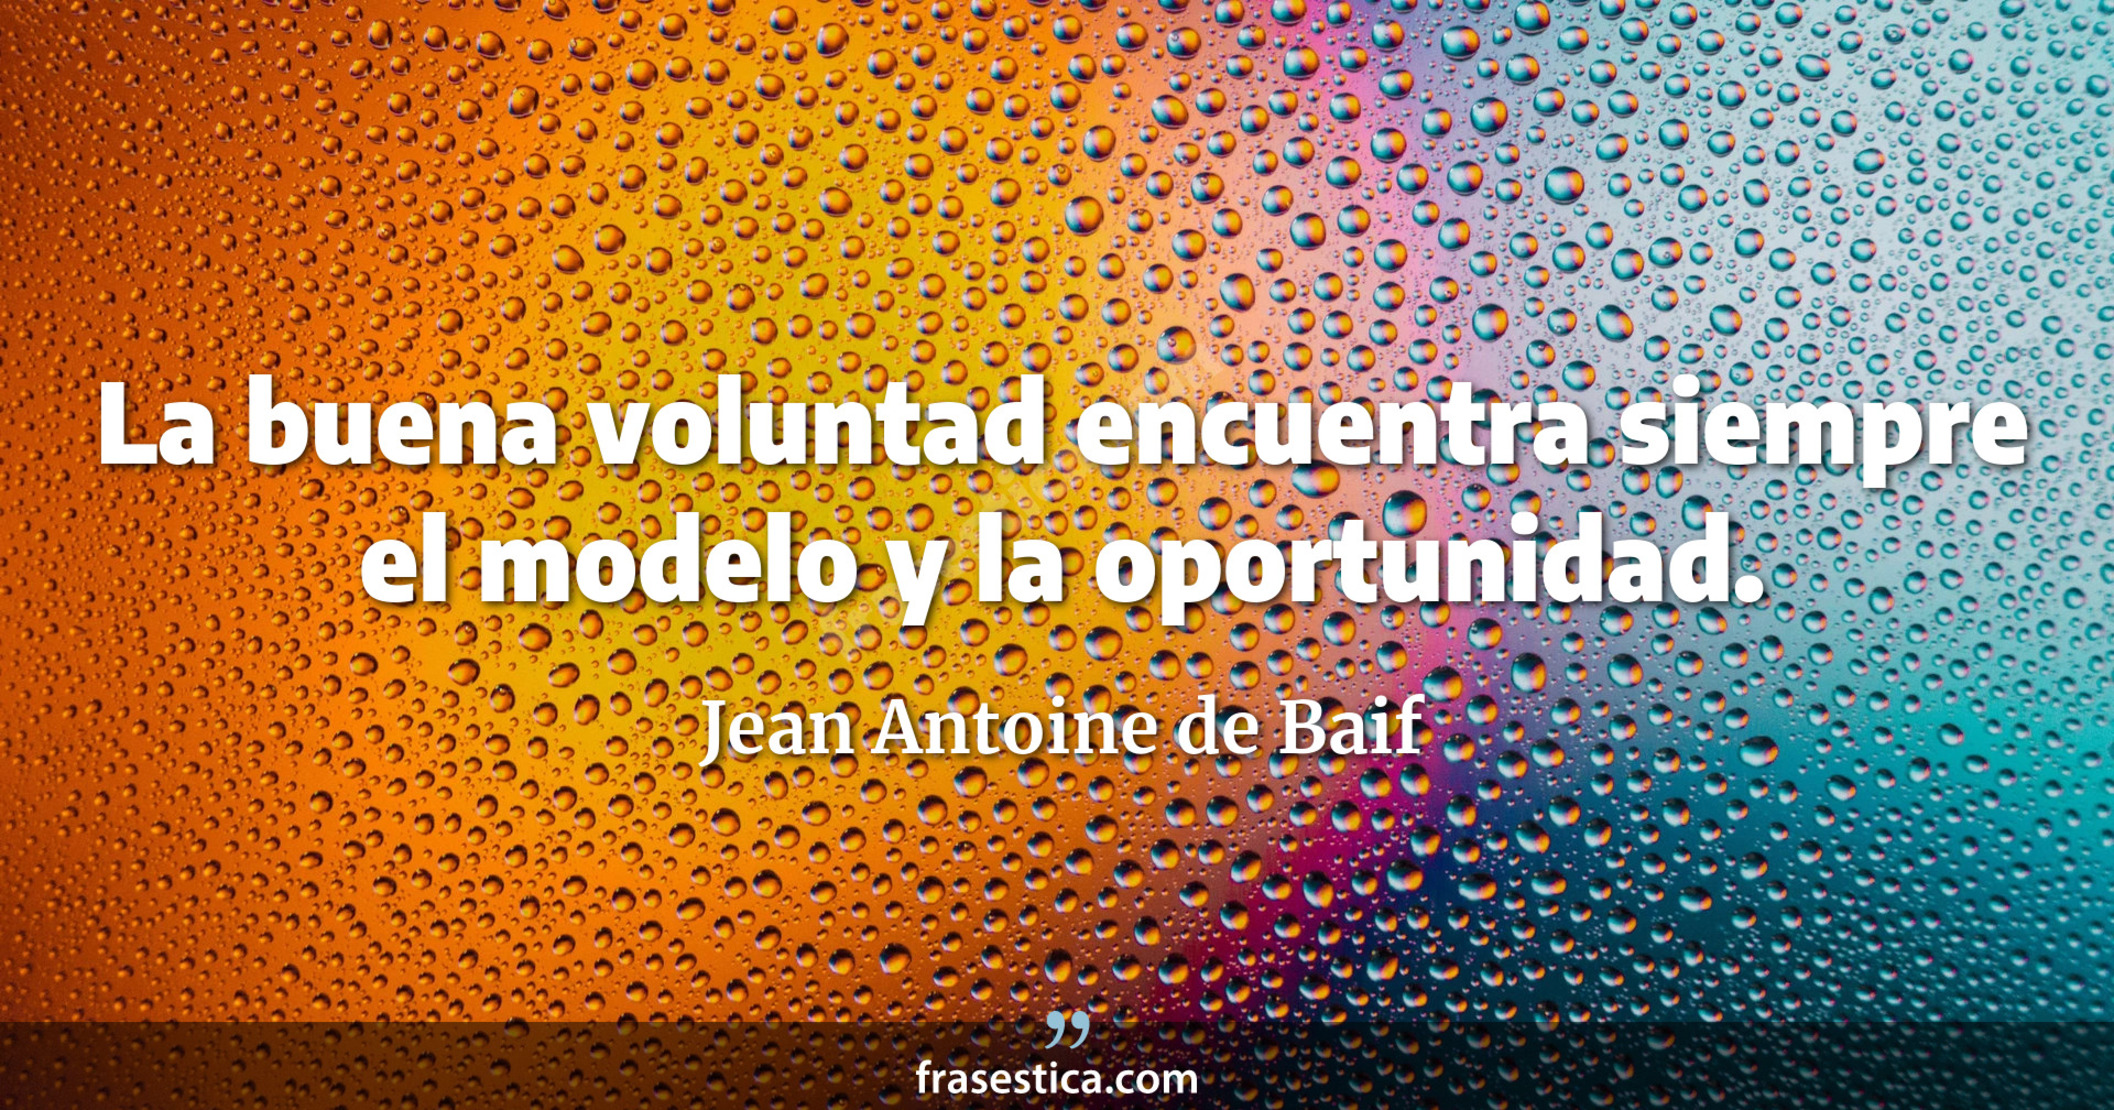 La buena voluntad encuentra siempre el modelo y la oportunidad. - Jean Antoine de Baif